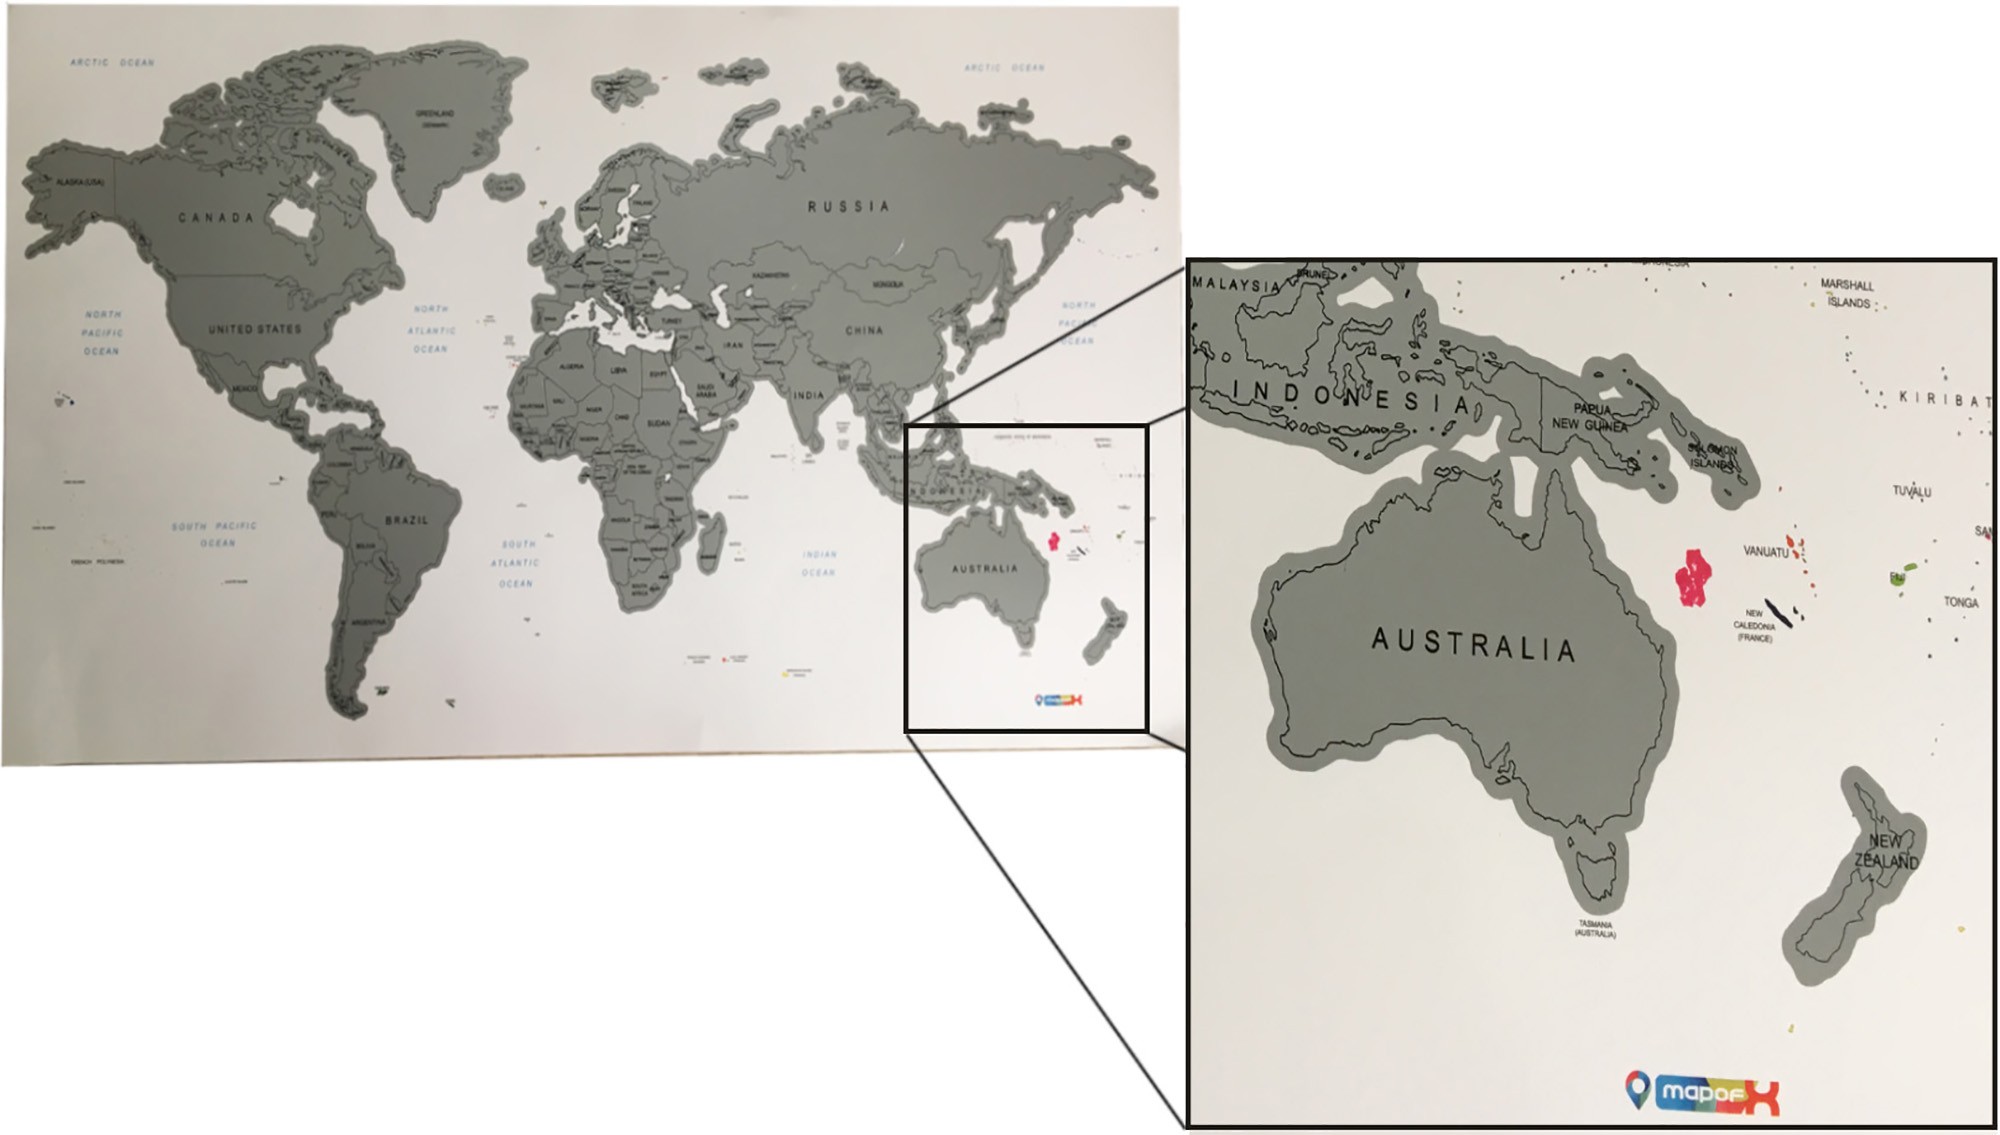 3051 - İndirimli Gez-Kazı Dünya Haritası - Kazınabilir Harita